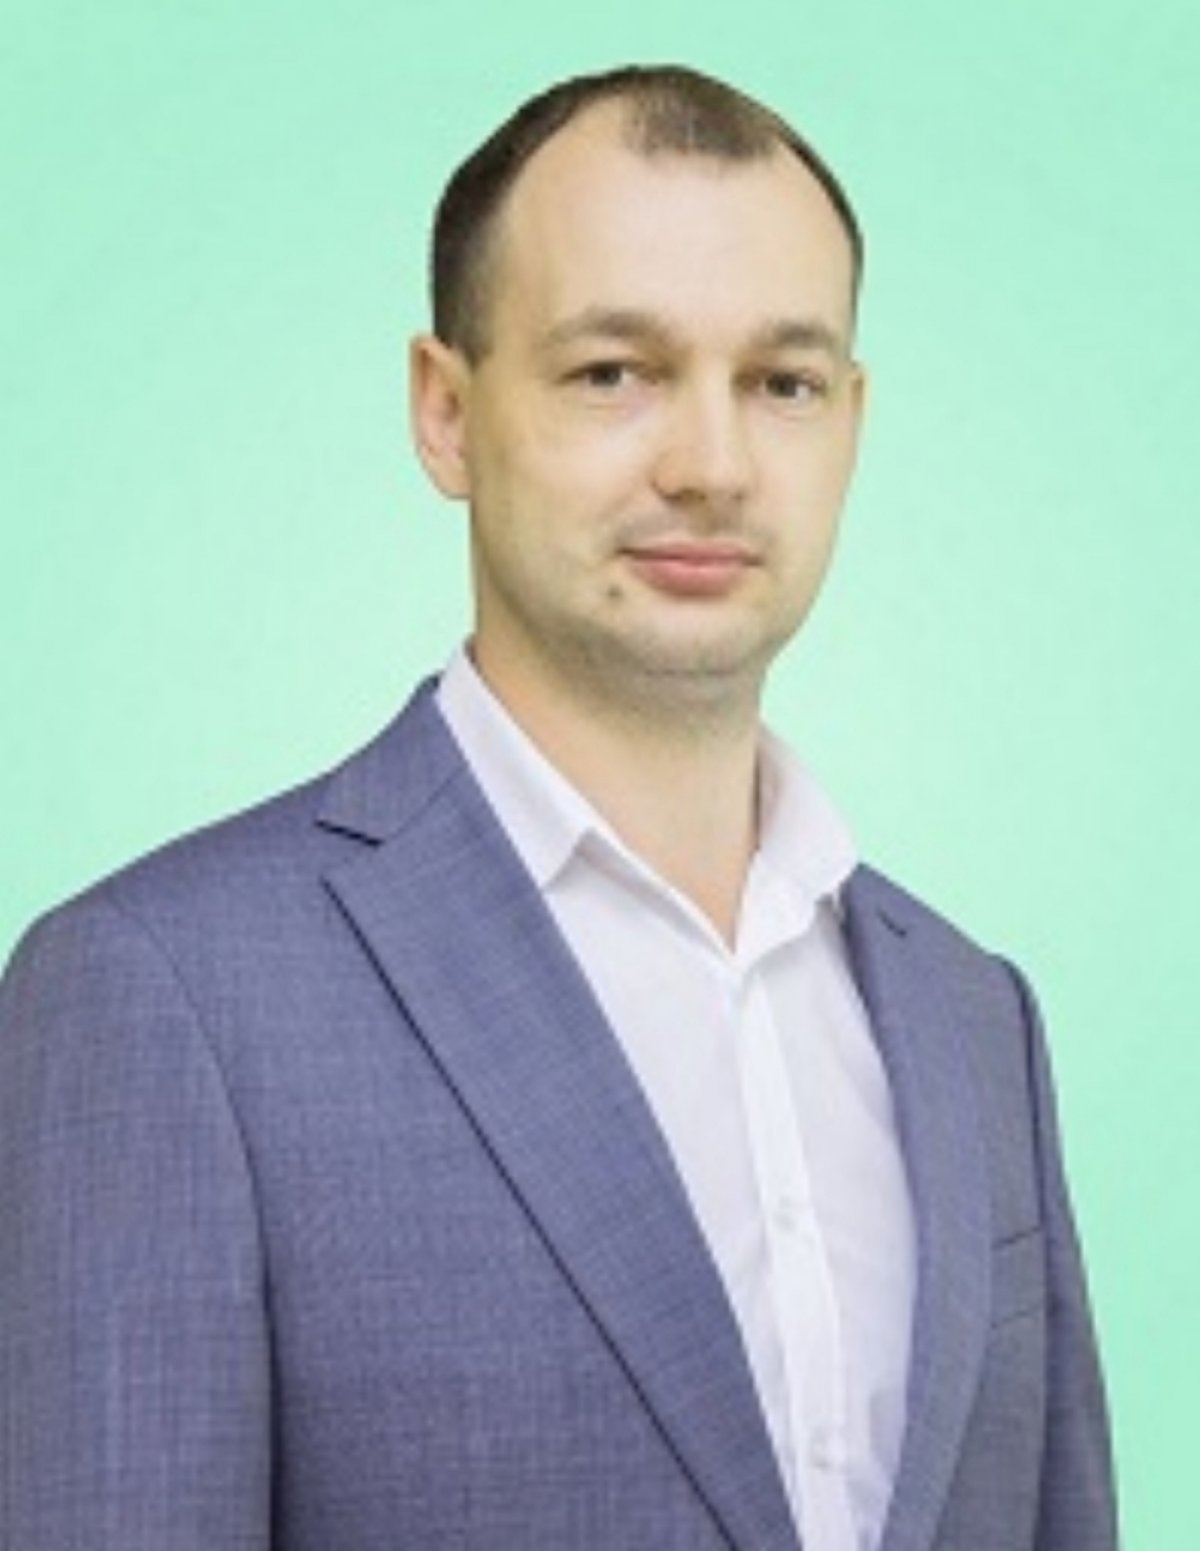 Сегодня отмечает День рождения проректор по хозяйственной работе и безопасности ОмГМУ Иван Александрович Онуфриев